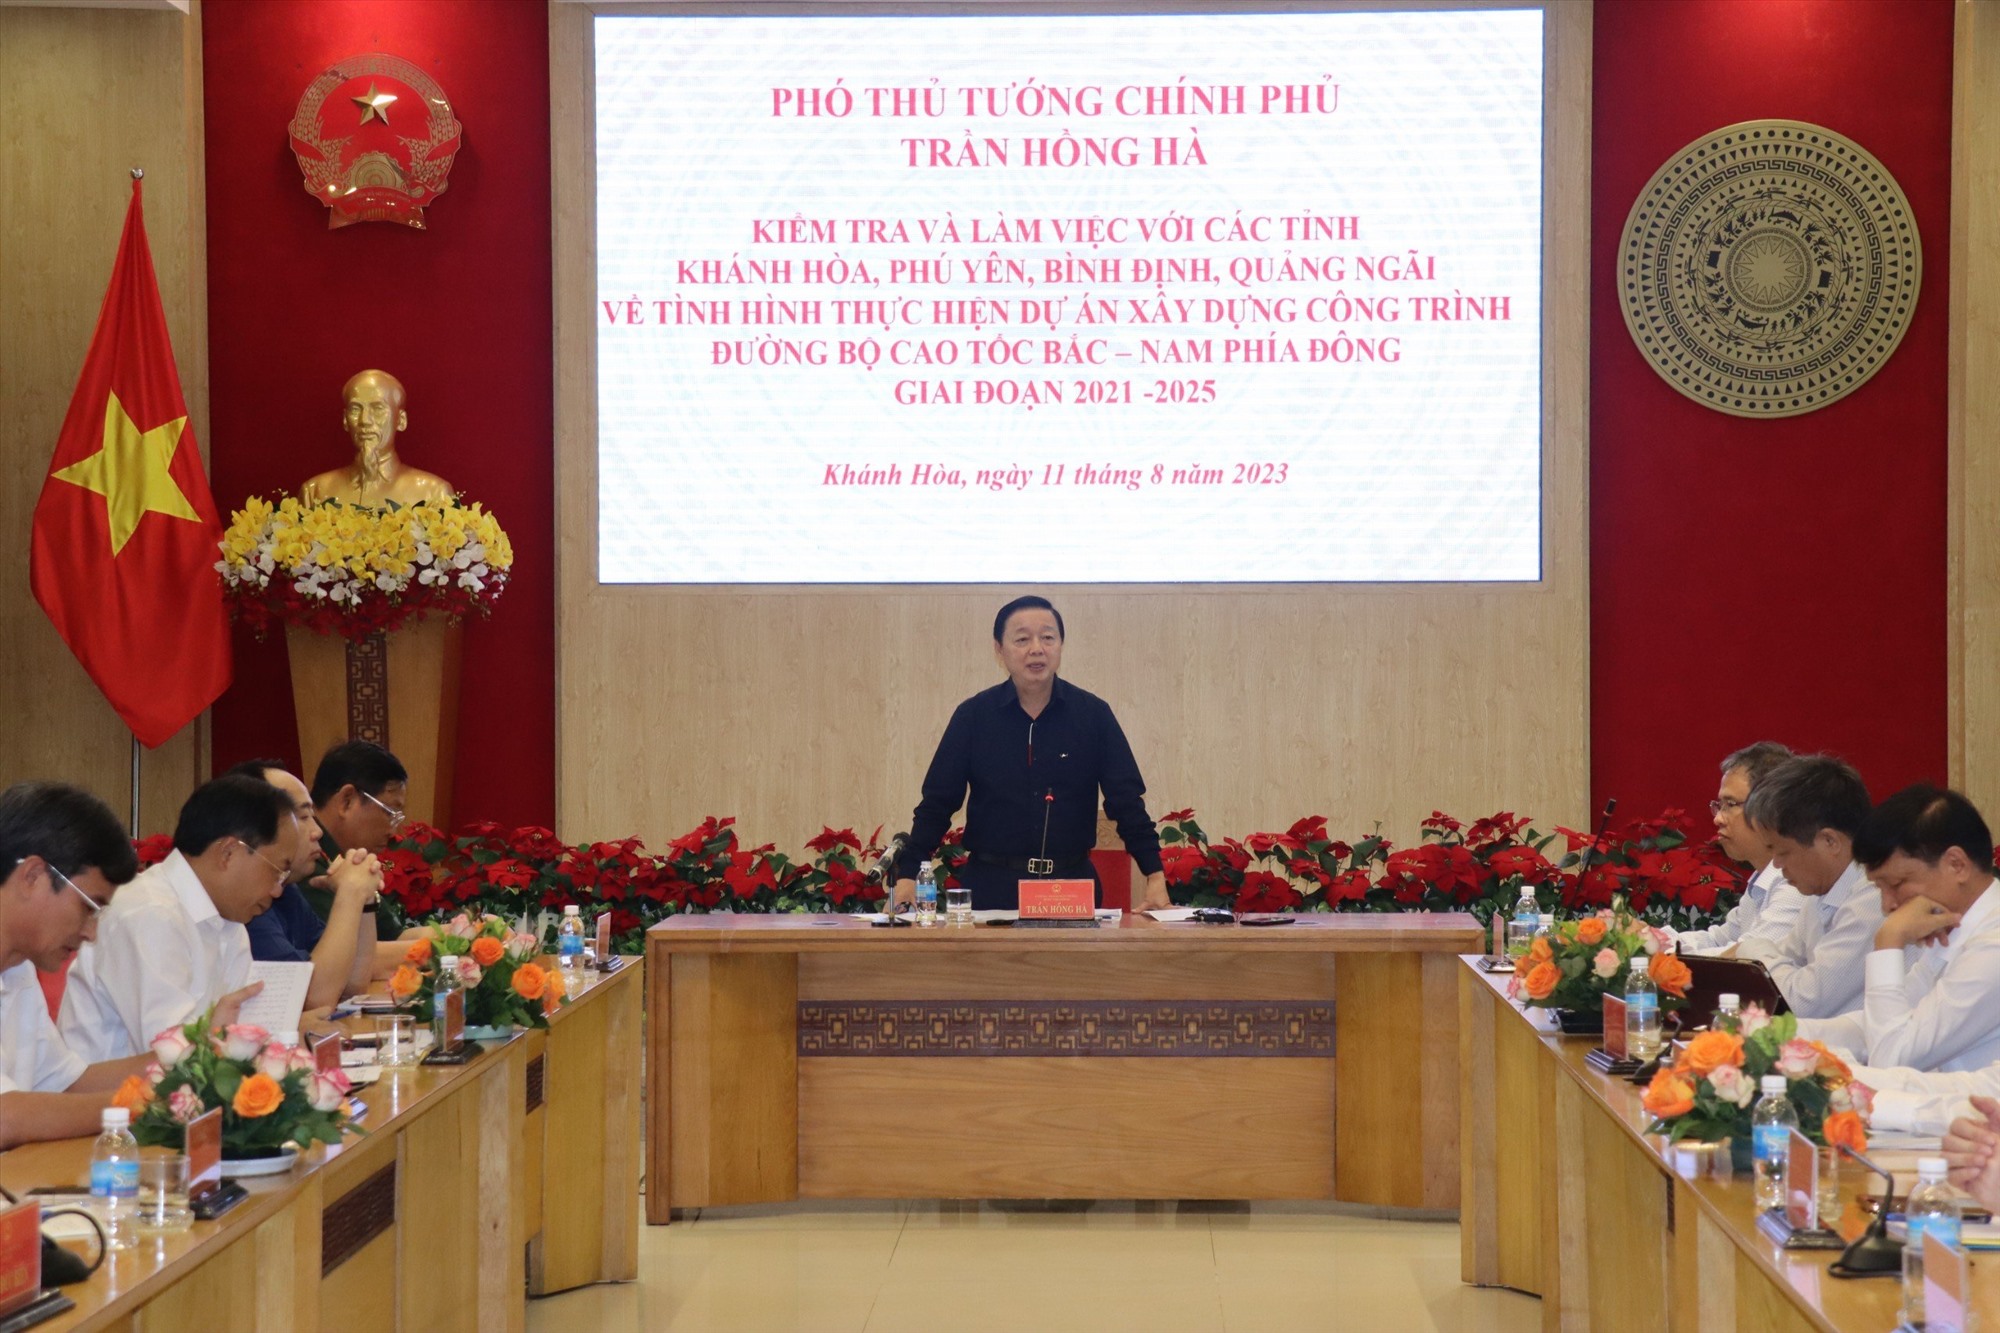 Phó Thủ tướng Chính phủ Trần Hồng Hà yêu cầu các tỉnh Quảng Ngãi, Bình Định, Phú Yên và Khánh Hòa đẩy nhanh tiến độ xây dựng cao tốc. Ảnh: Văn Kỳ